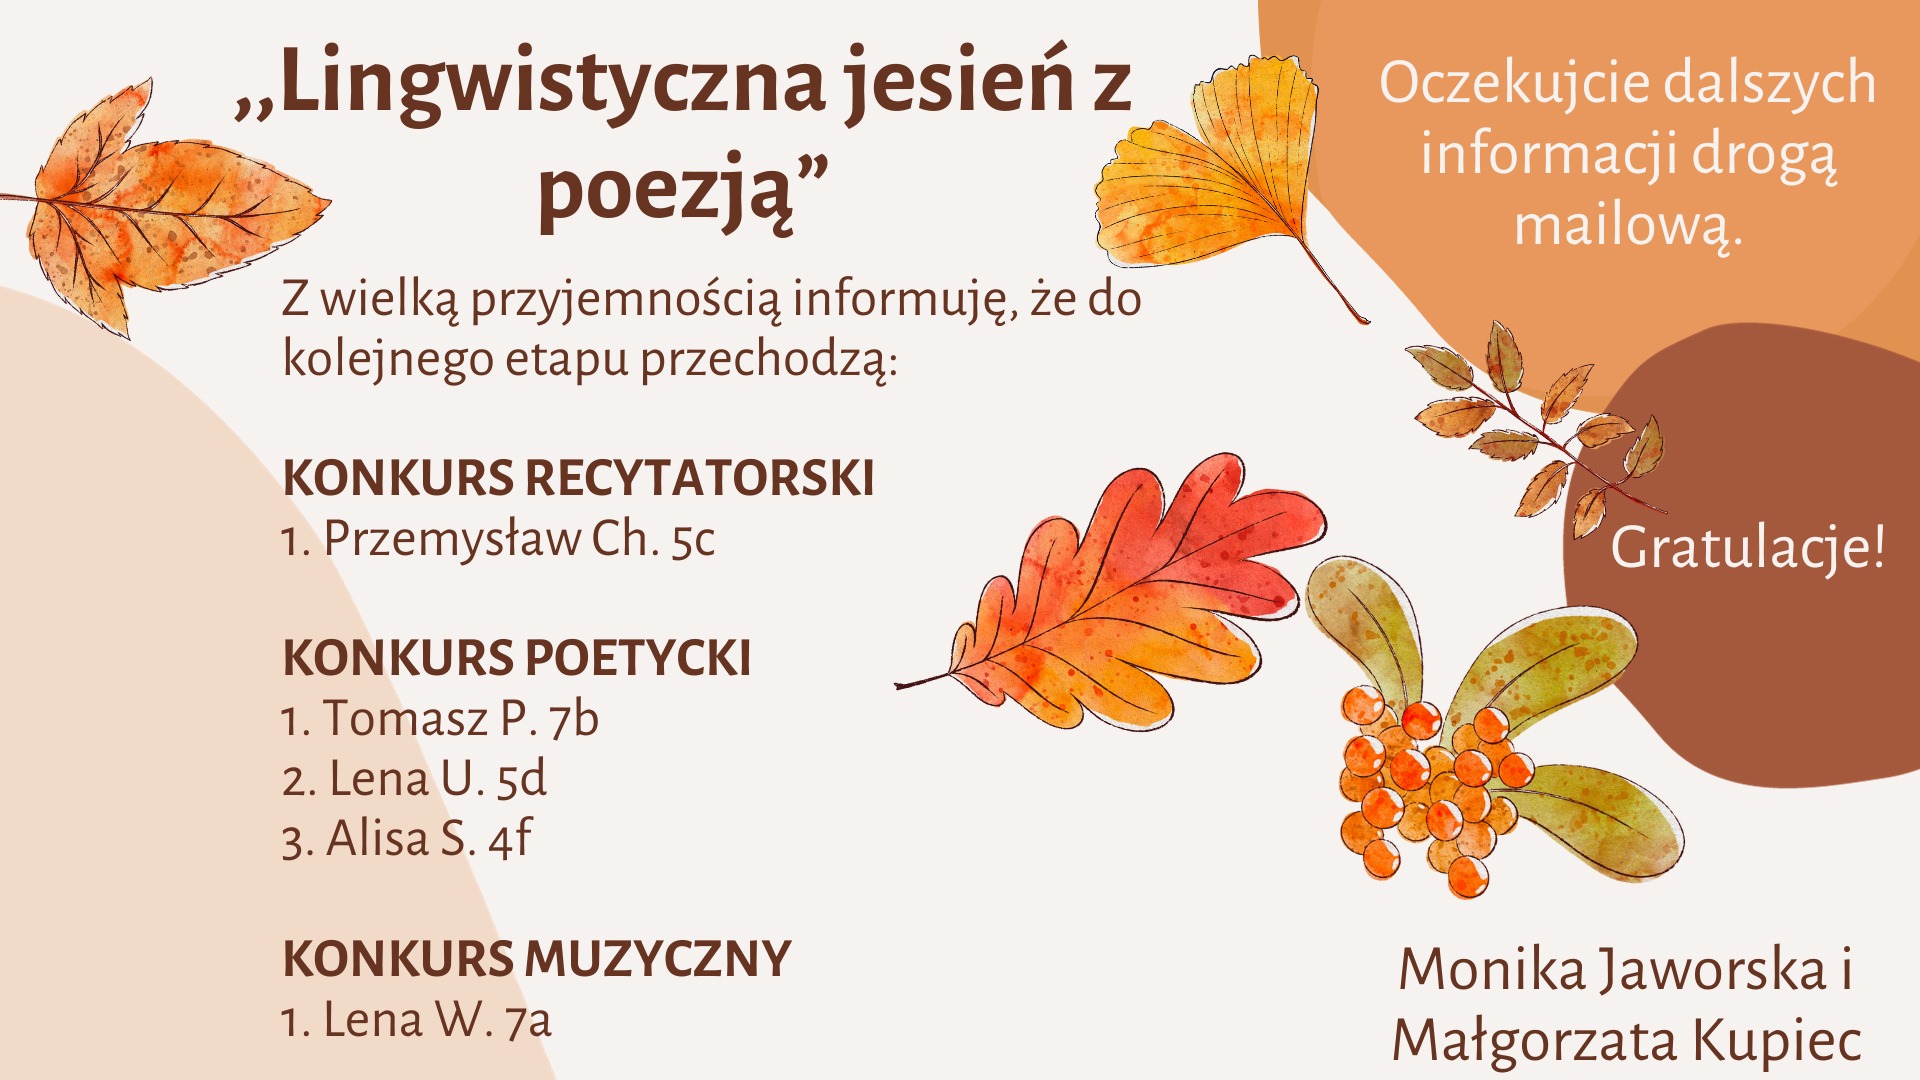 Lingwistyczna jesień z poezją - wyniki - Obrazek 1